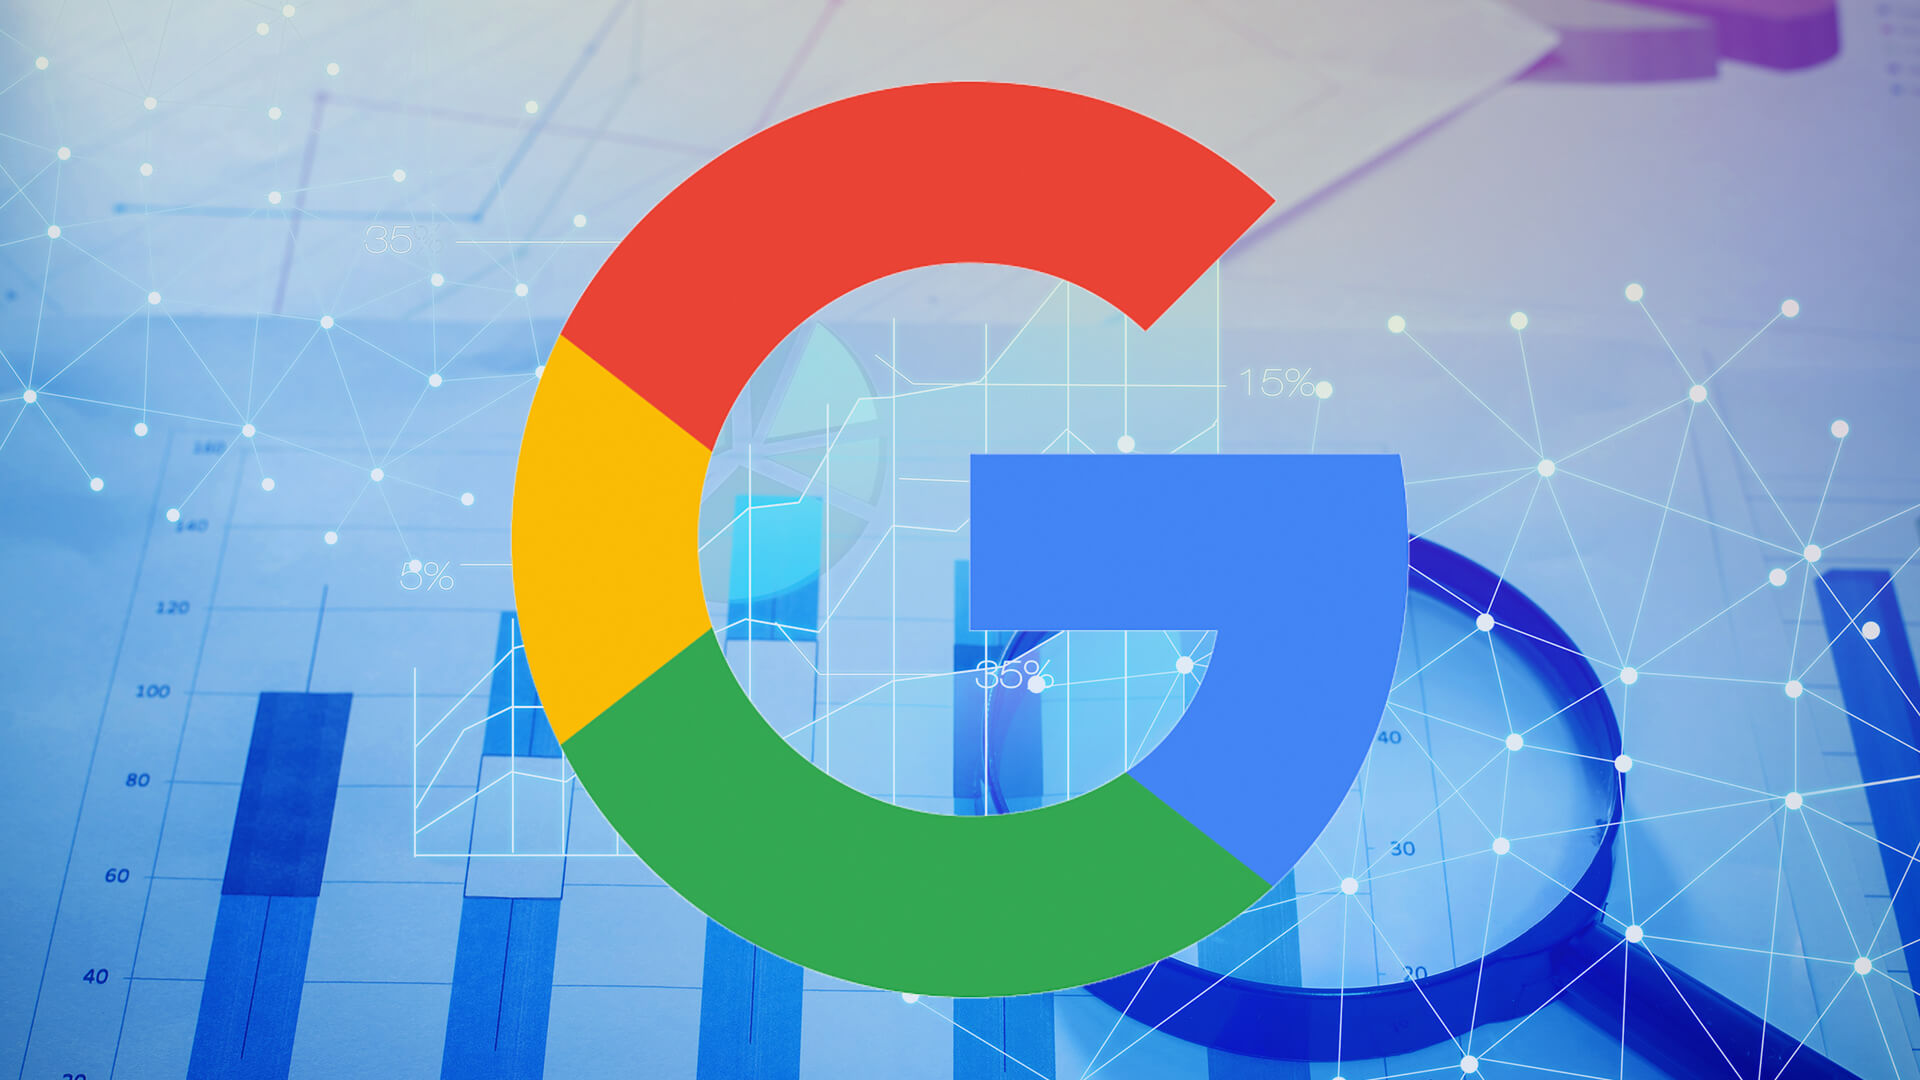 image logo google sur fond de données pour article sur la nouvelle fonction de suppression automatique des historiques d'activité et localisation